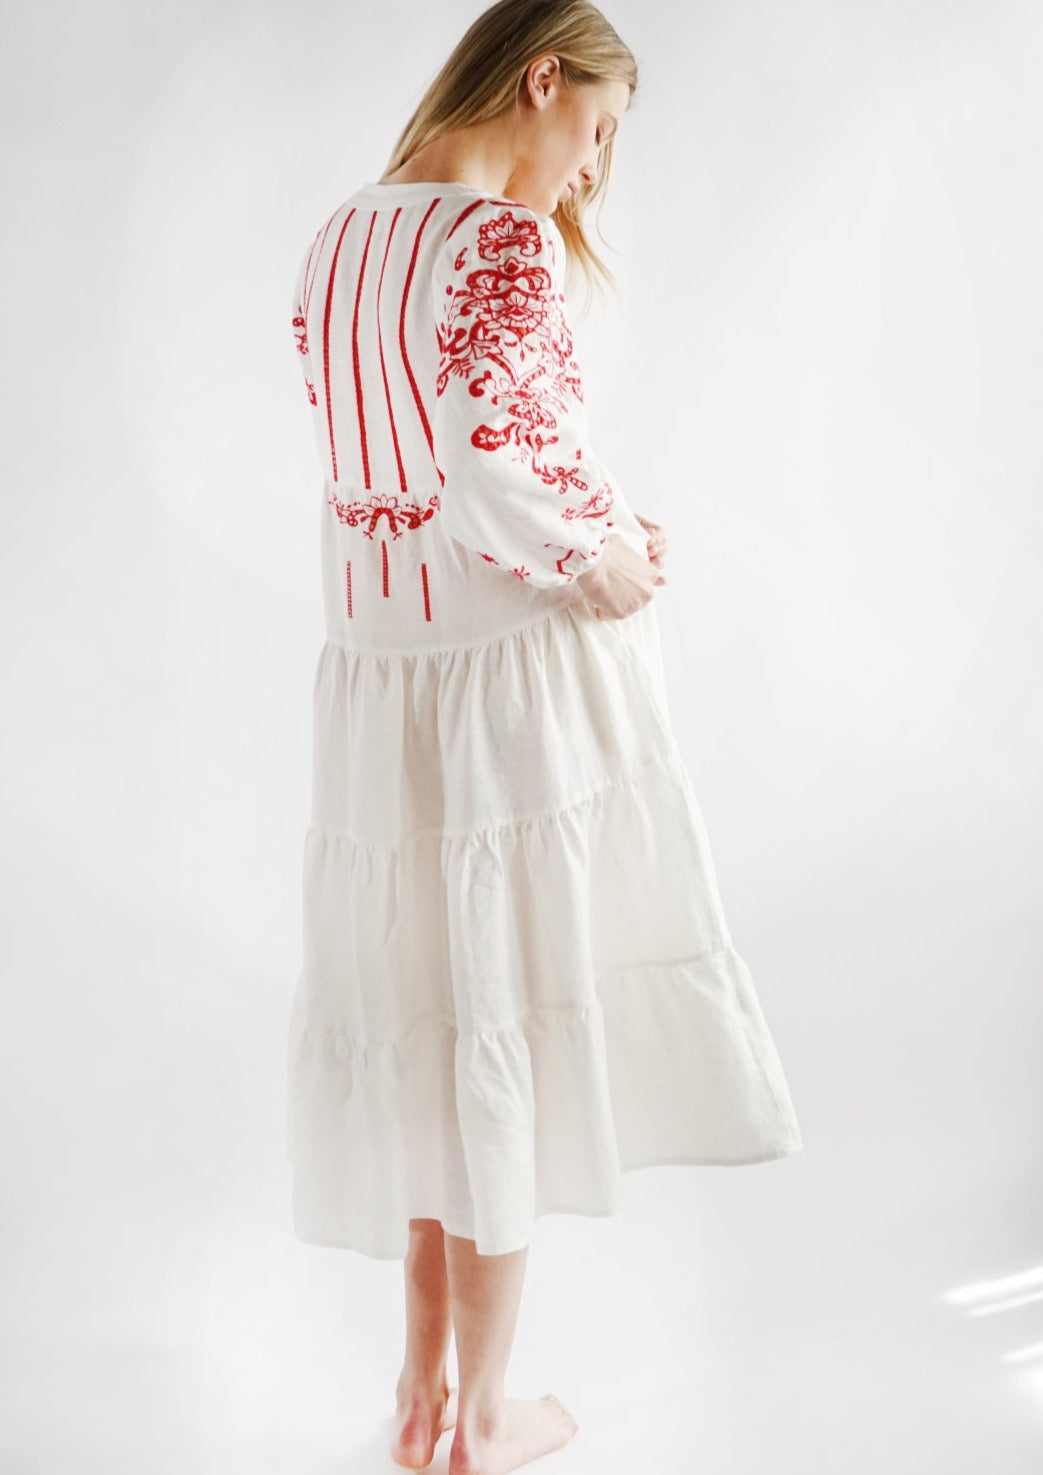 Aradia White Red Dress